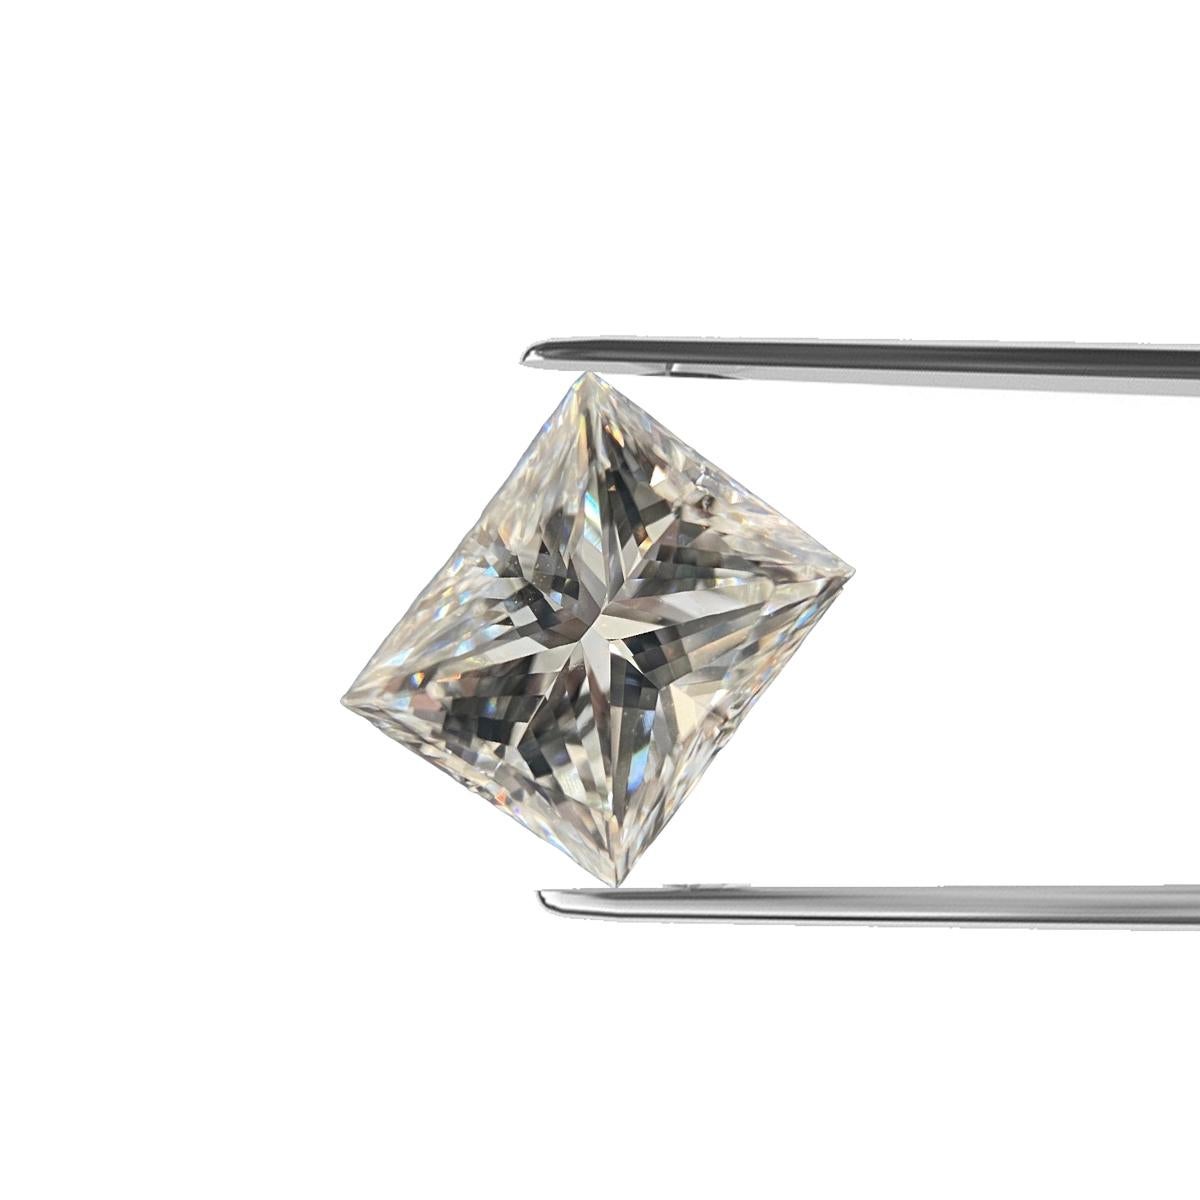  ITEM DESCRIPTION

ID #: NYC57058
Stone Shape:	PRINCESS CUT DIAMOND
Diamond Weight:	1.23ct
Clarity: VVS2
Color: H
Cut:	Excellent
Measurements: 6.50 x5.37x 4.26 mm
Depth %:	79.40%
Table %:	74.00%
Symmetry: Fair
Polish: Good
Fluorescence: